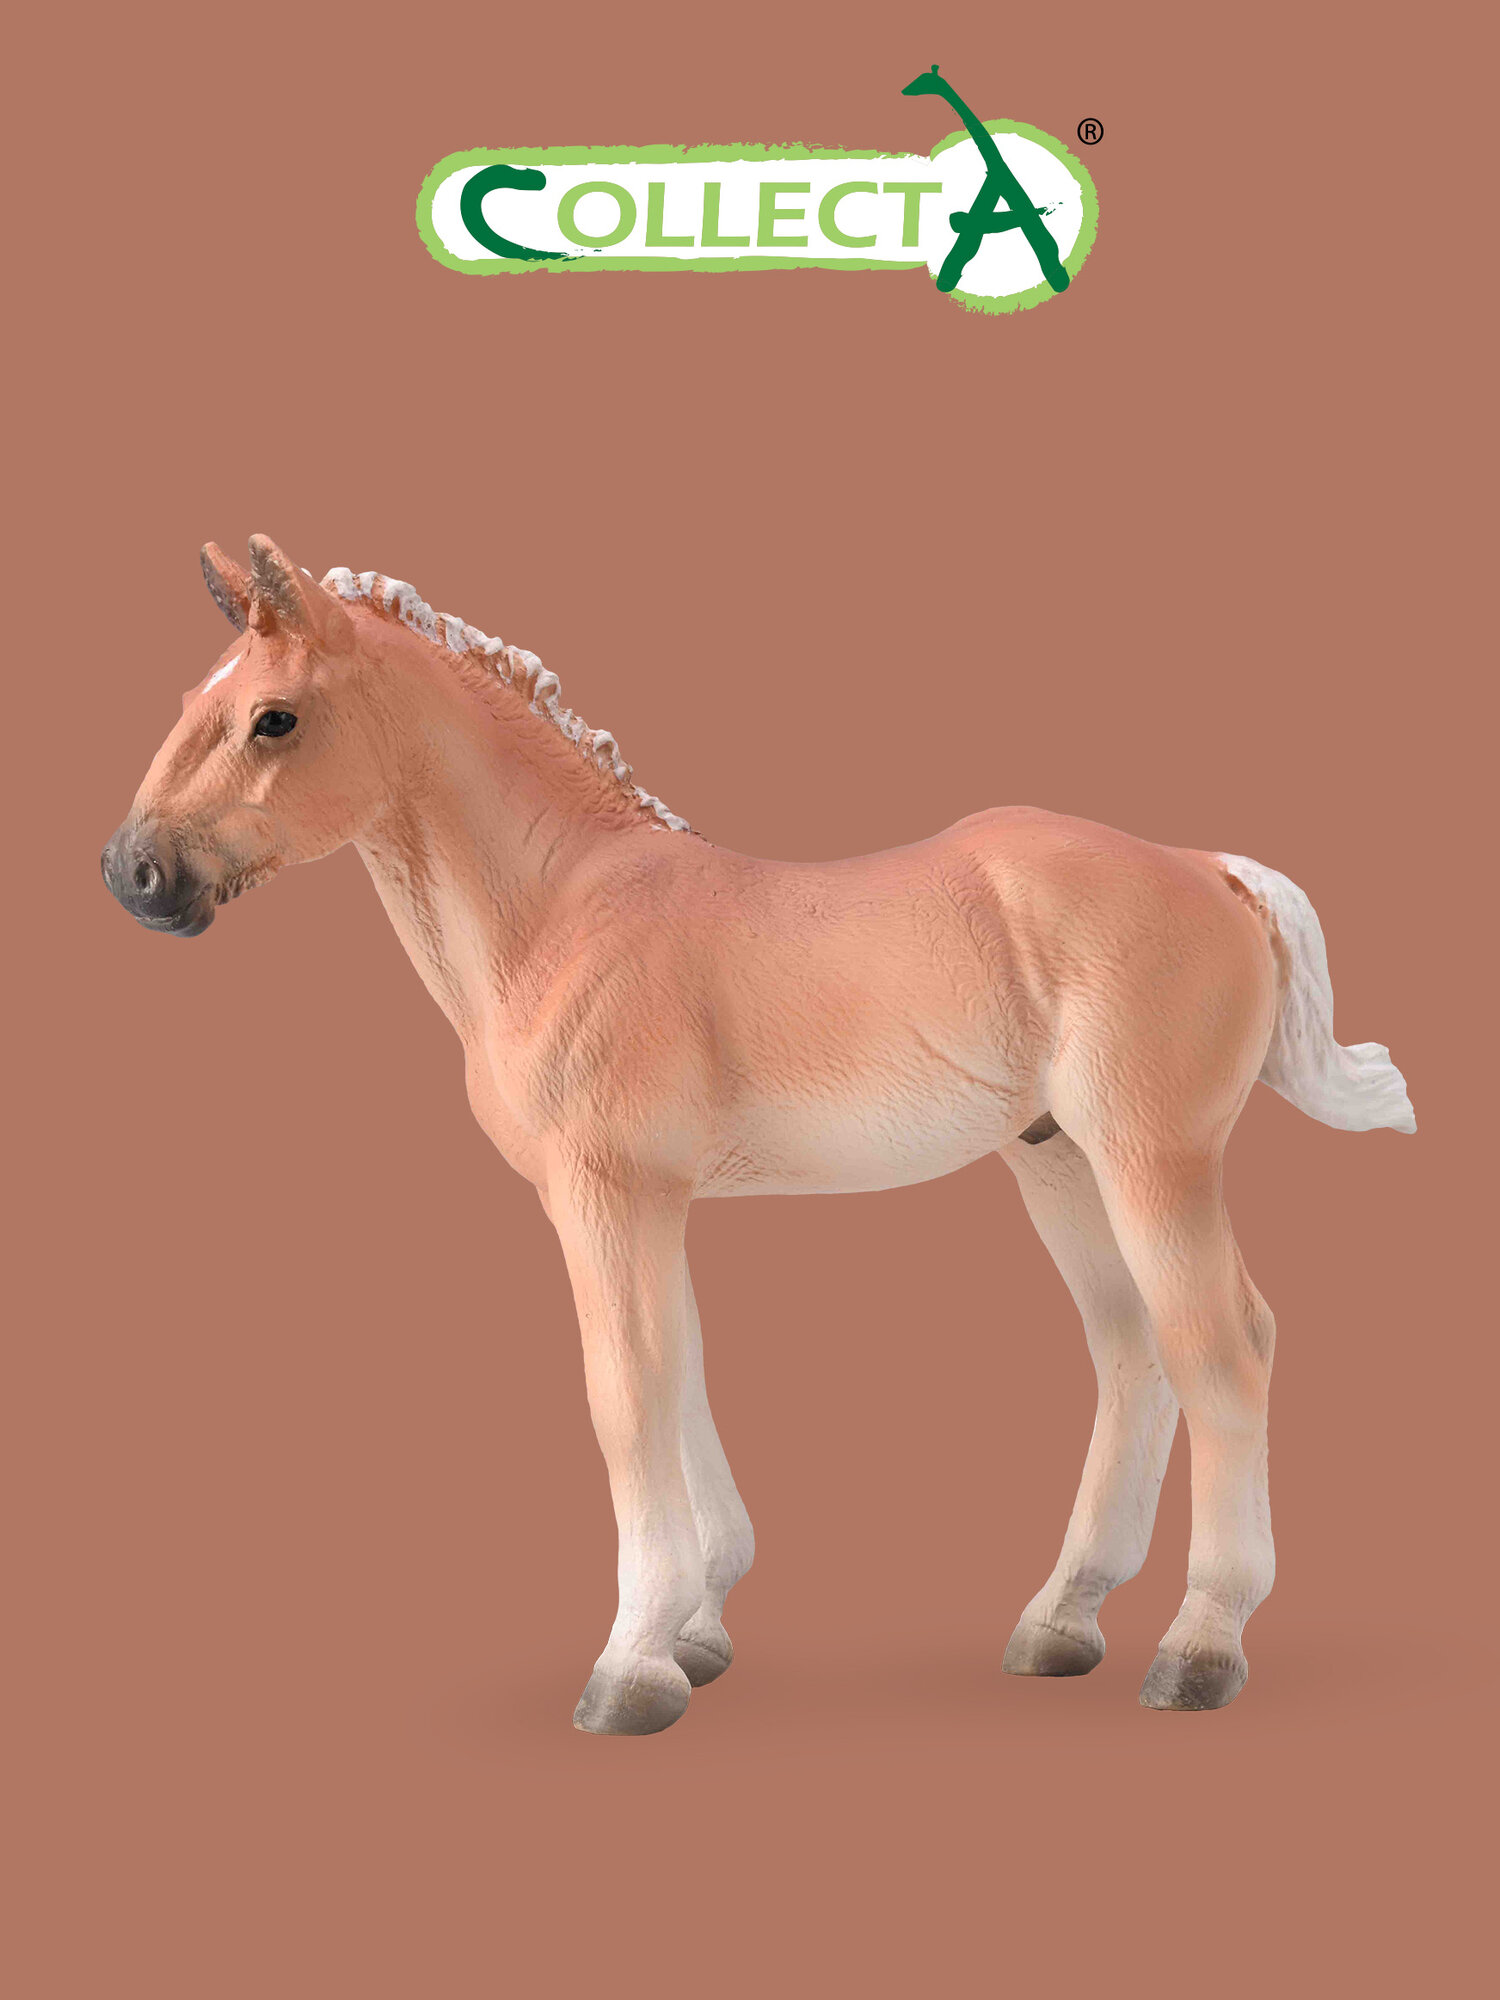 Фигурка животного Collecta, Жеребенок лошади Норикер